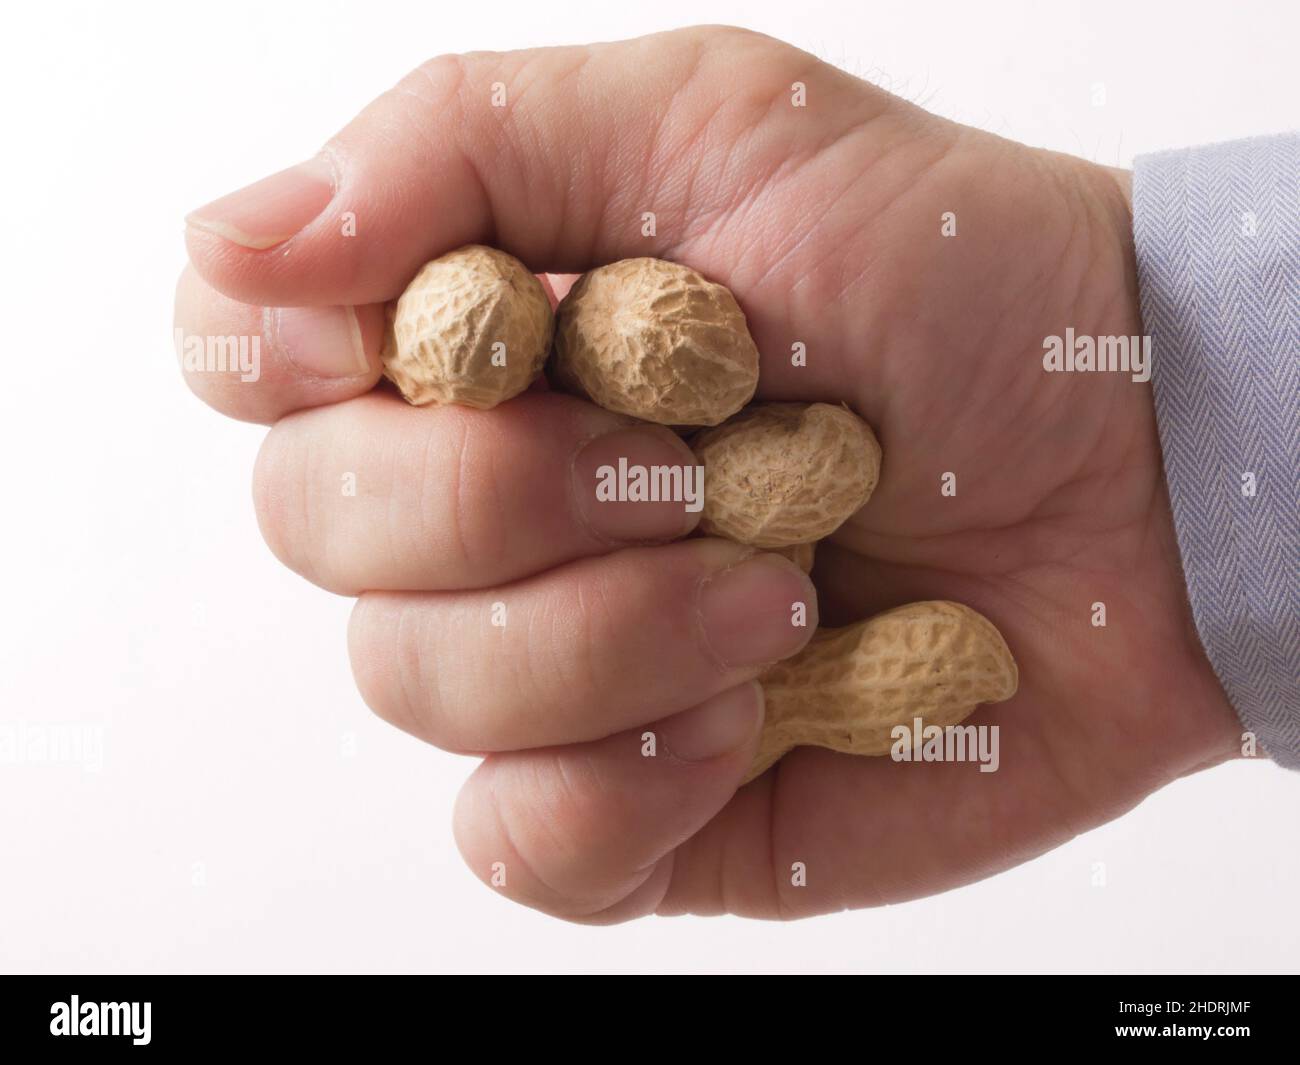 peanut, peanuts Stock Photo